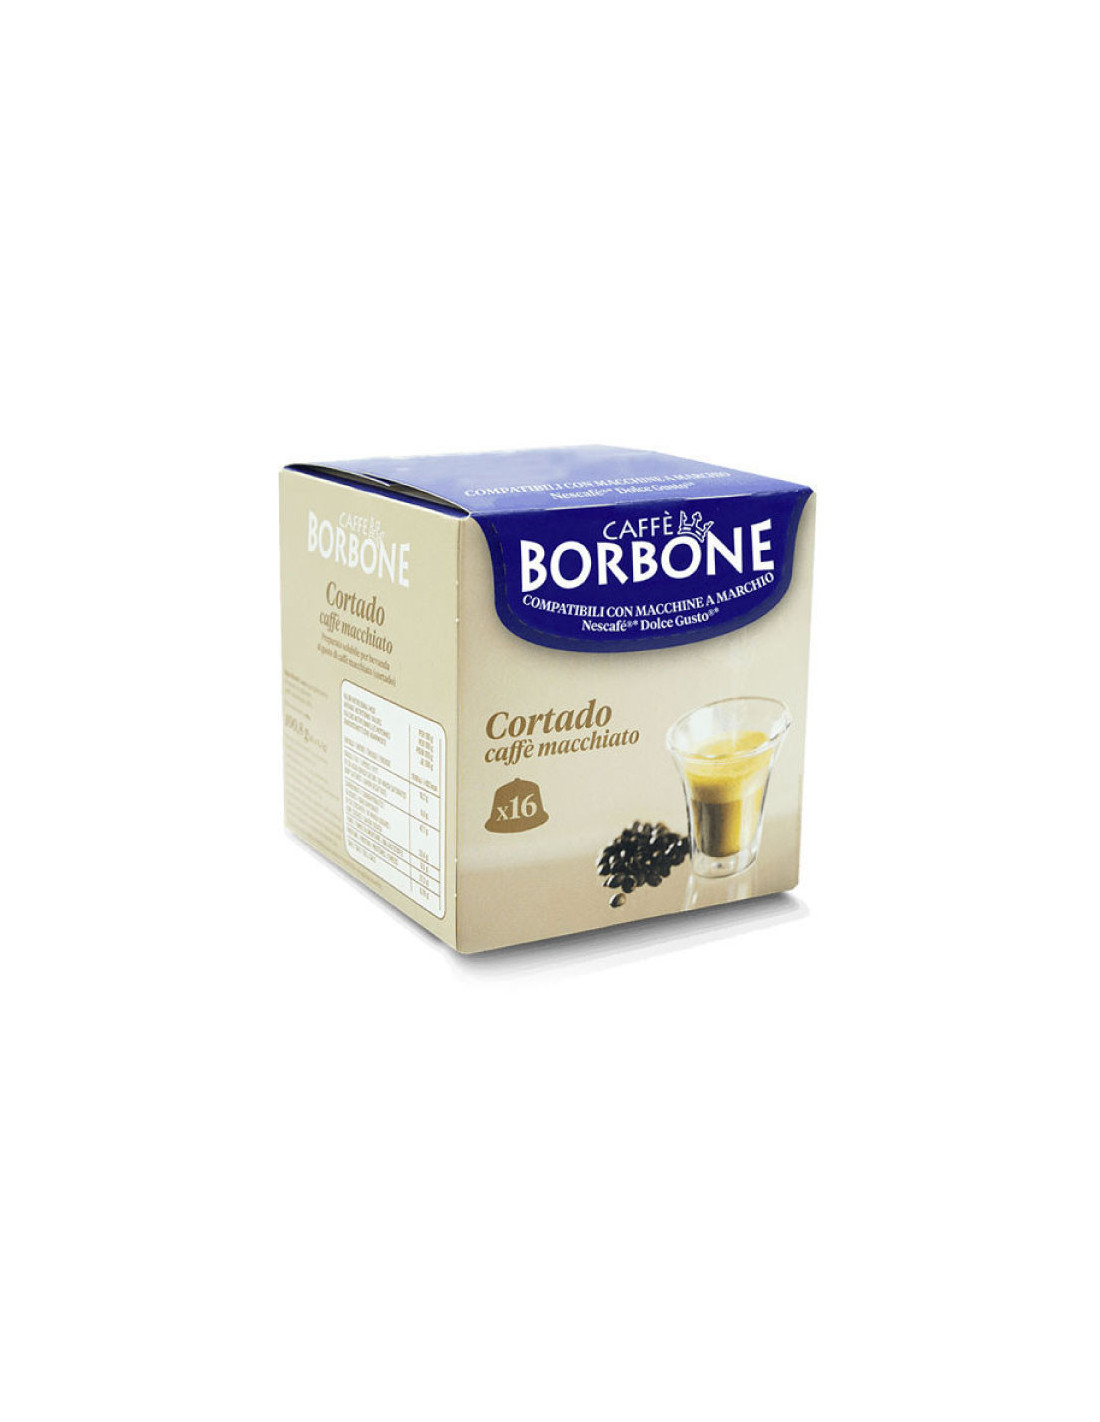 64 capsule Caffè Borbone - CORTADO - compatibili Nescafè Dolce